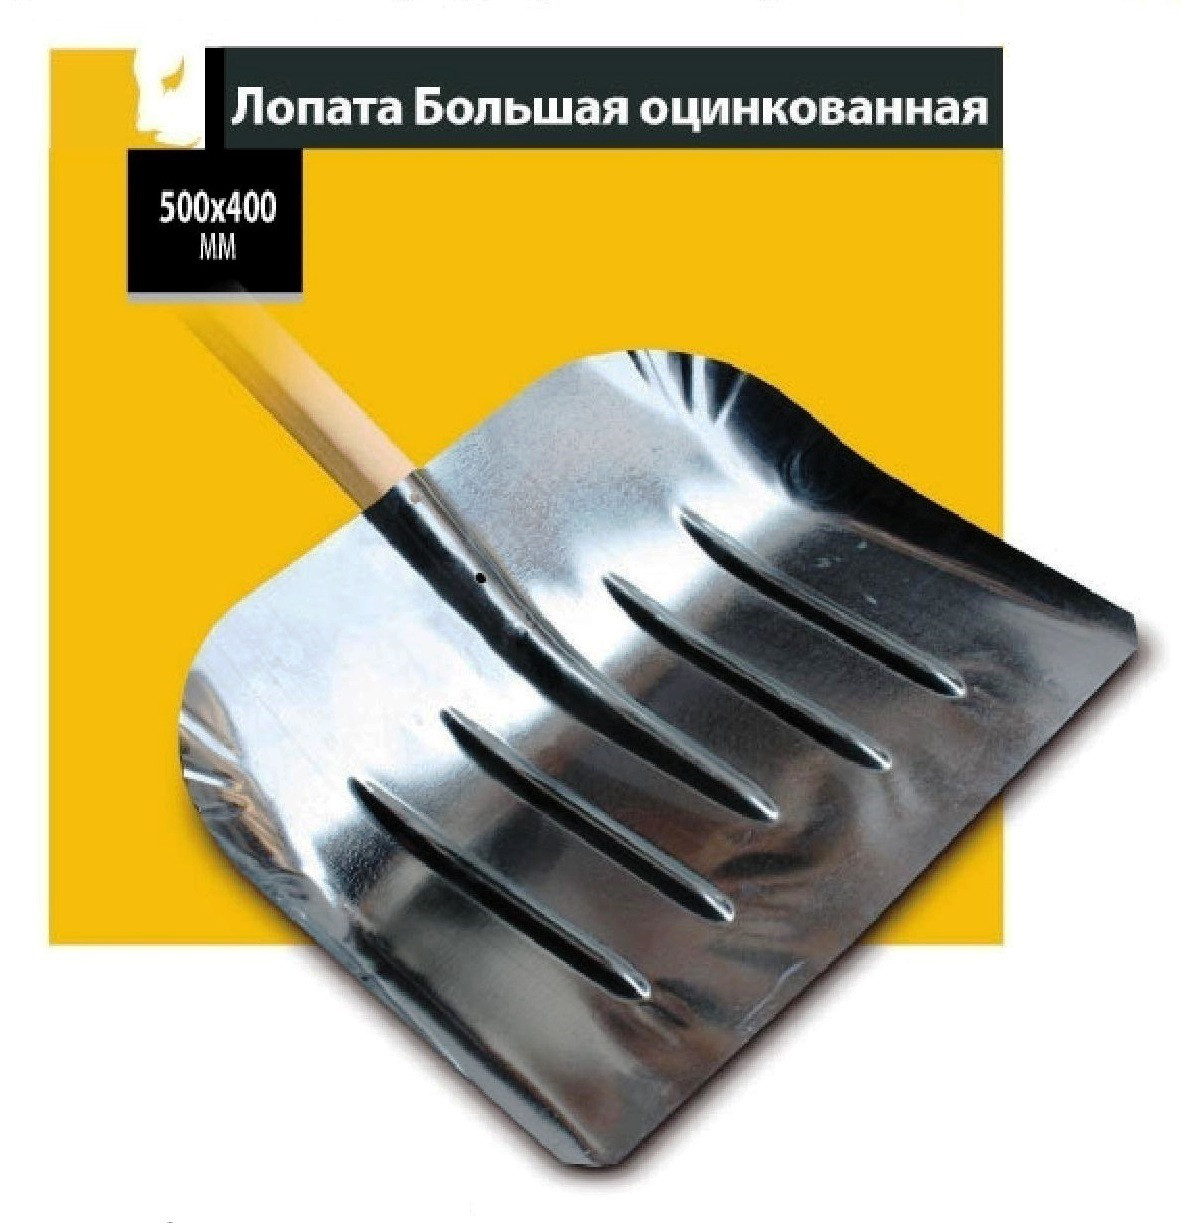  большая,оцинкованная: продажа, цена в Харькове. Лопаты от .